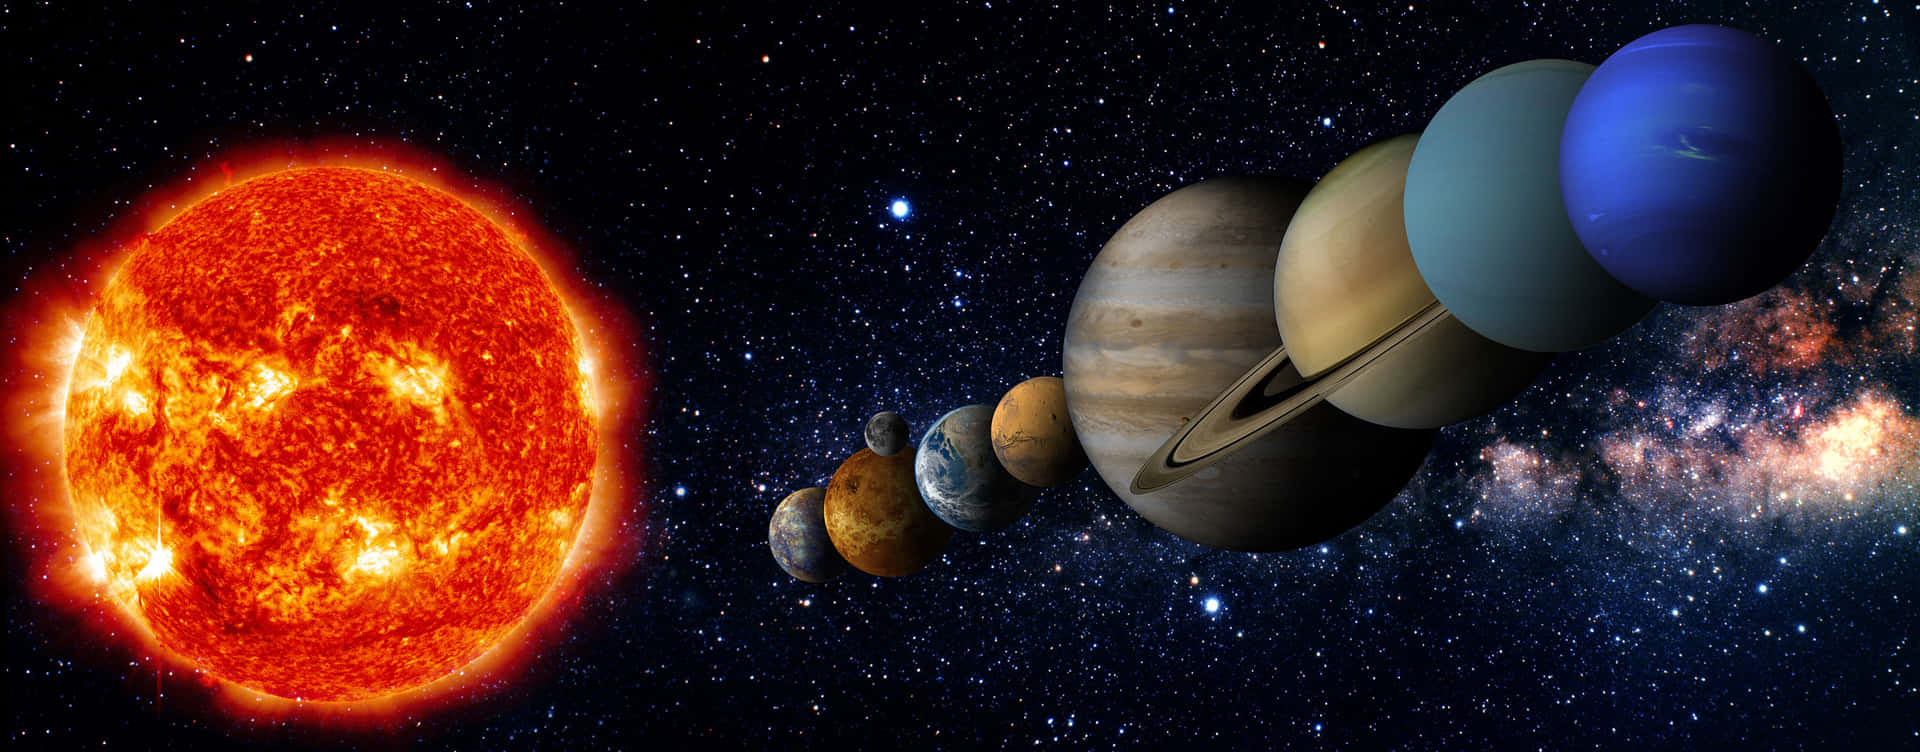 Imagende Los Planetas Alineados En El Sistema Solar.